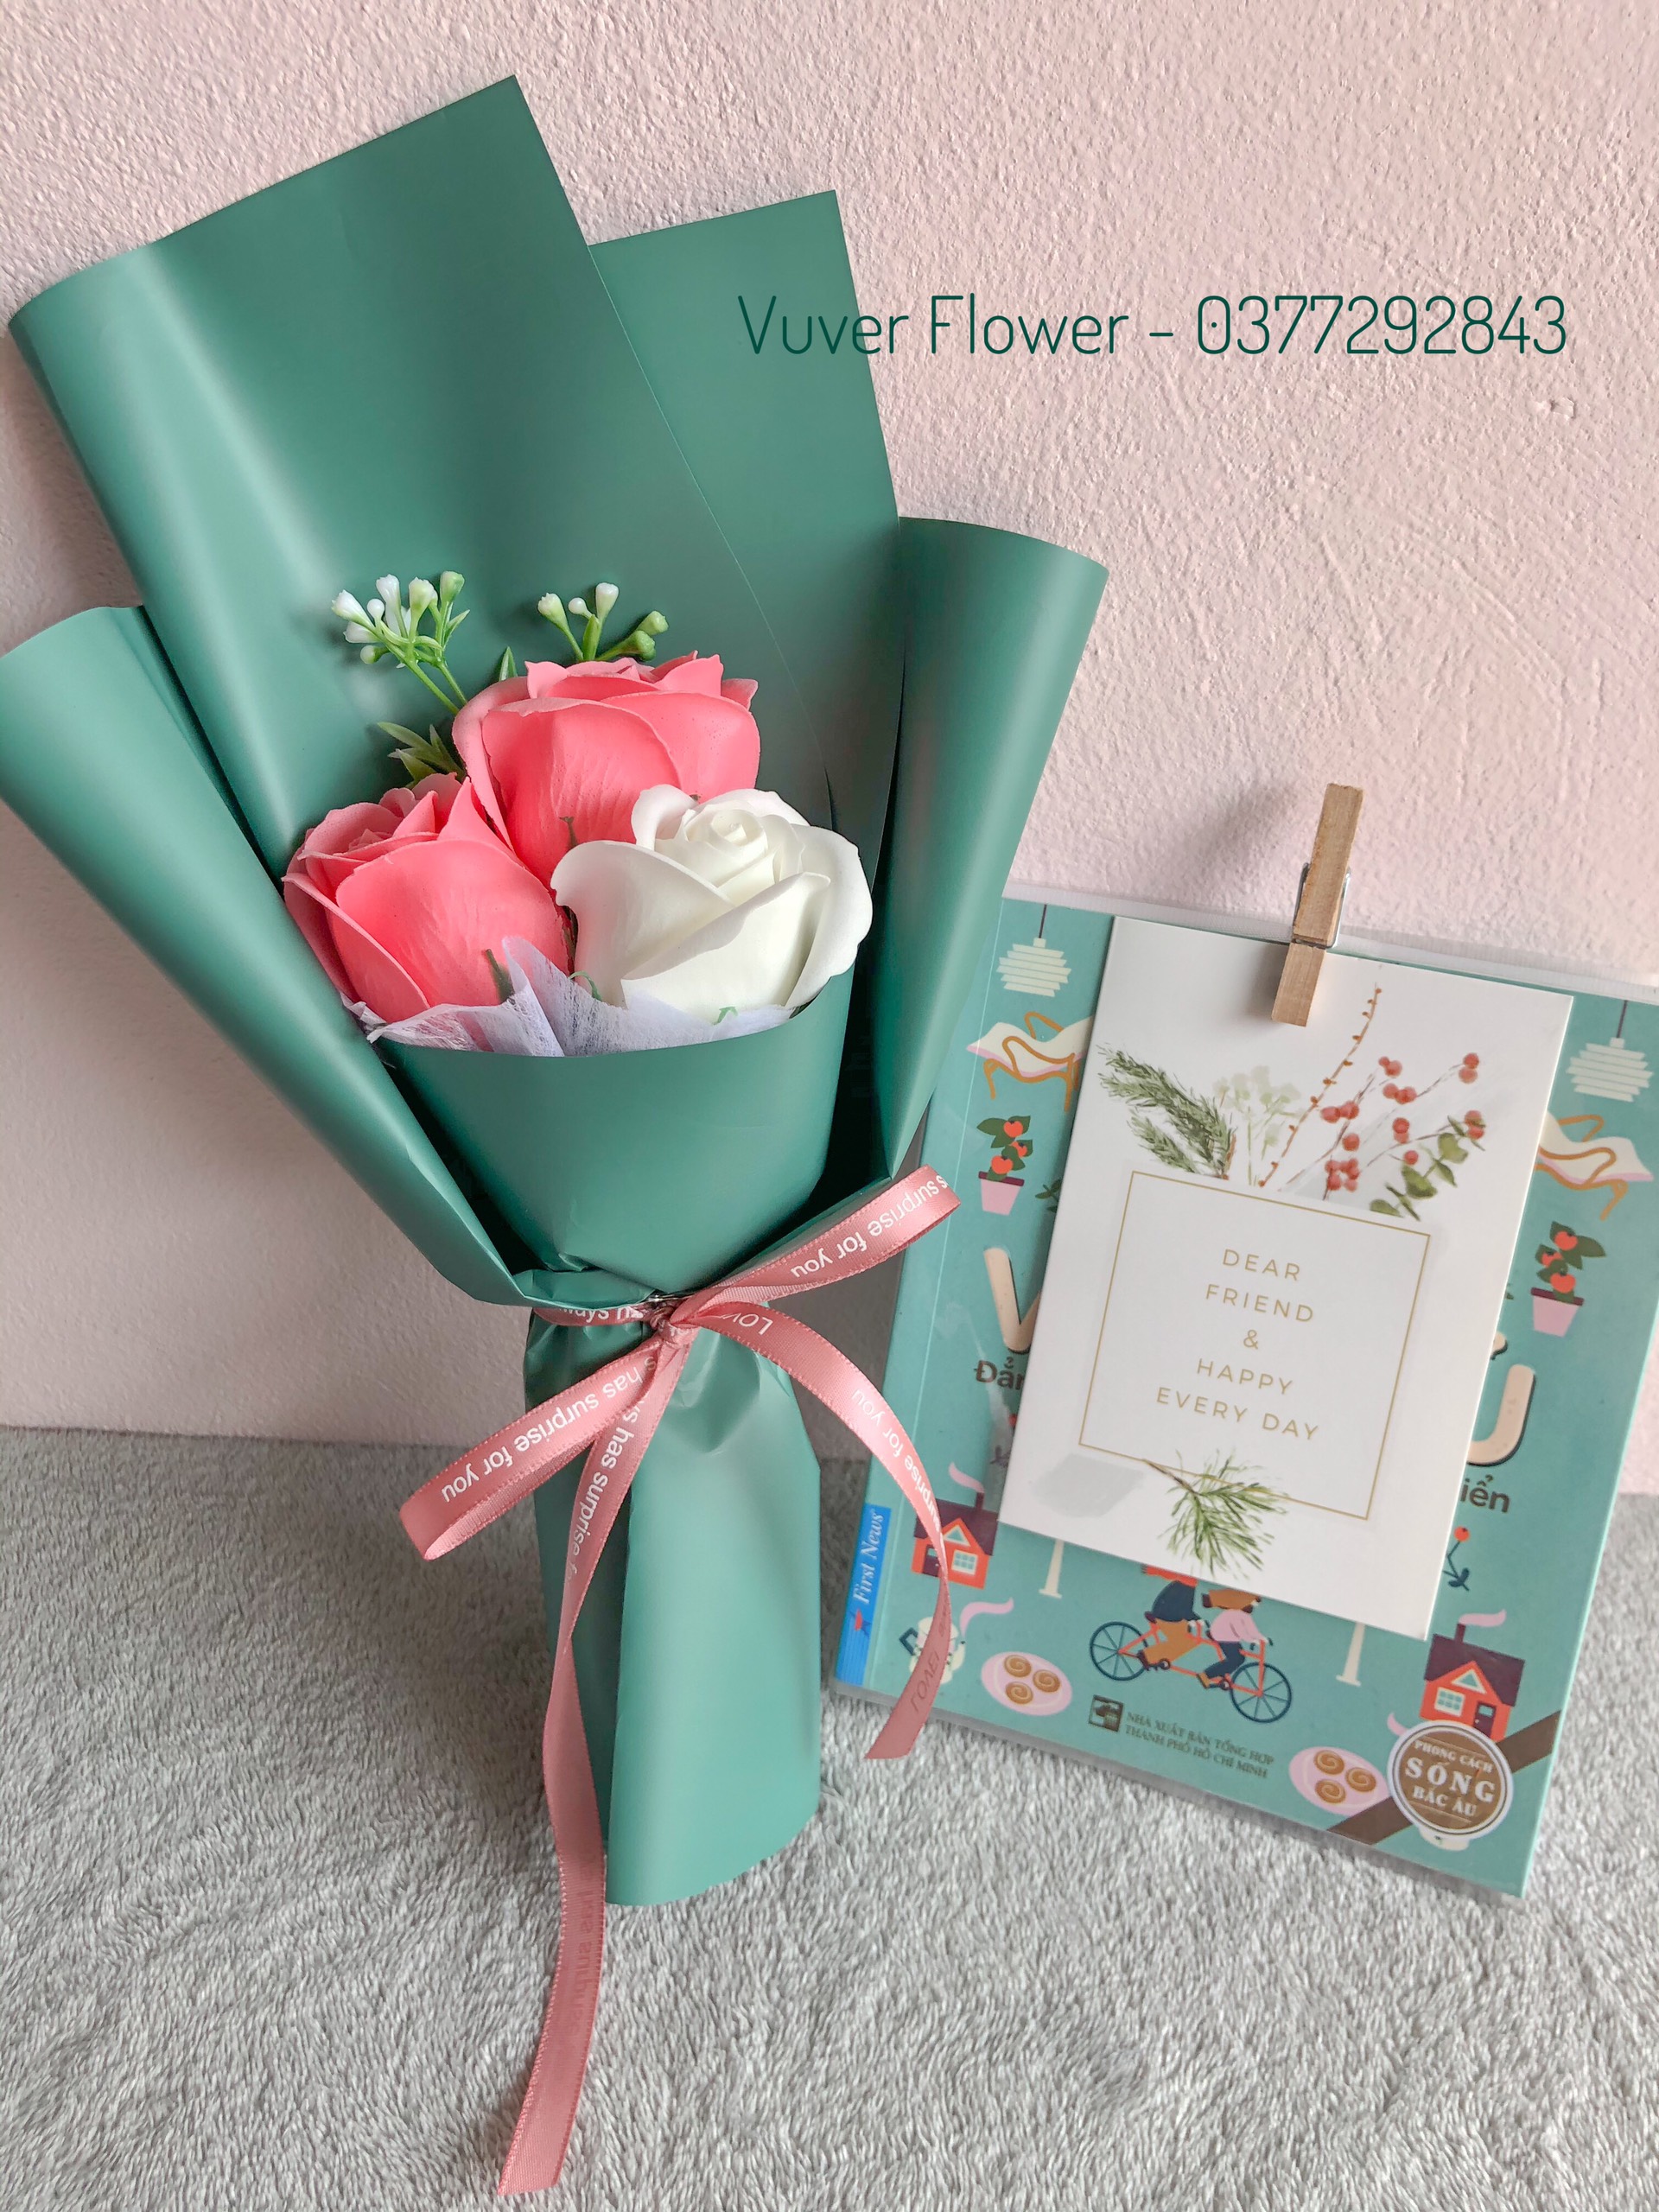 (Quà tặng bạn bè) Bó hoa sáp 3 bông hồng cao cấp (tặng thiệp) - ảnh thật, màu sắc rực rỡ, độ bền màu khoảng 1 năm, mùi thơm nhẹ dễ chịu, hình thức giống hoa thật